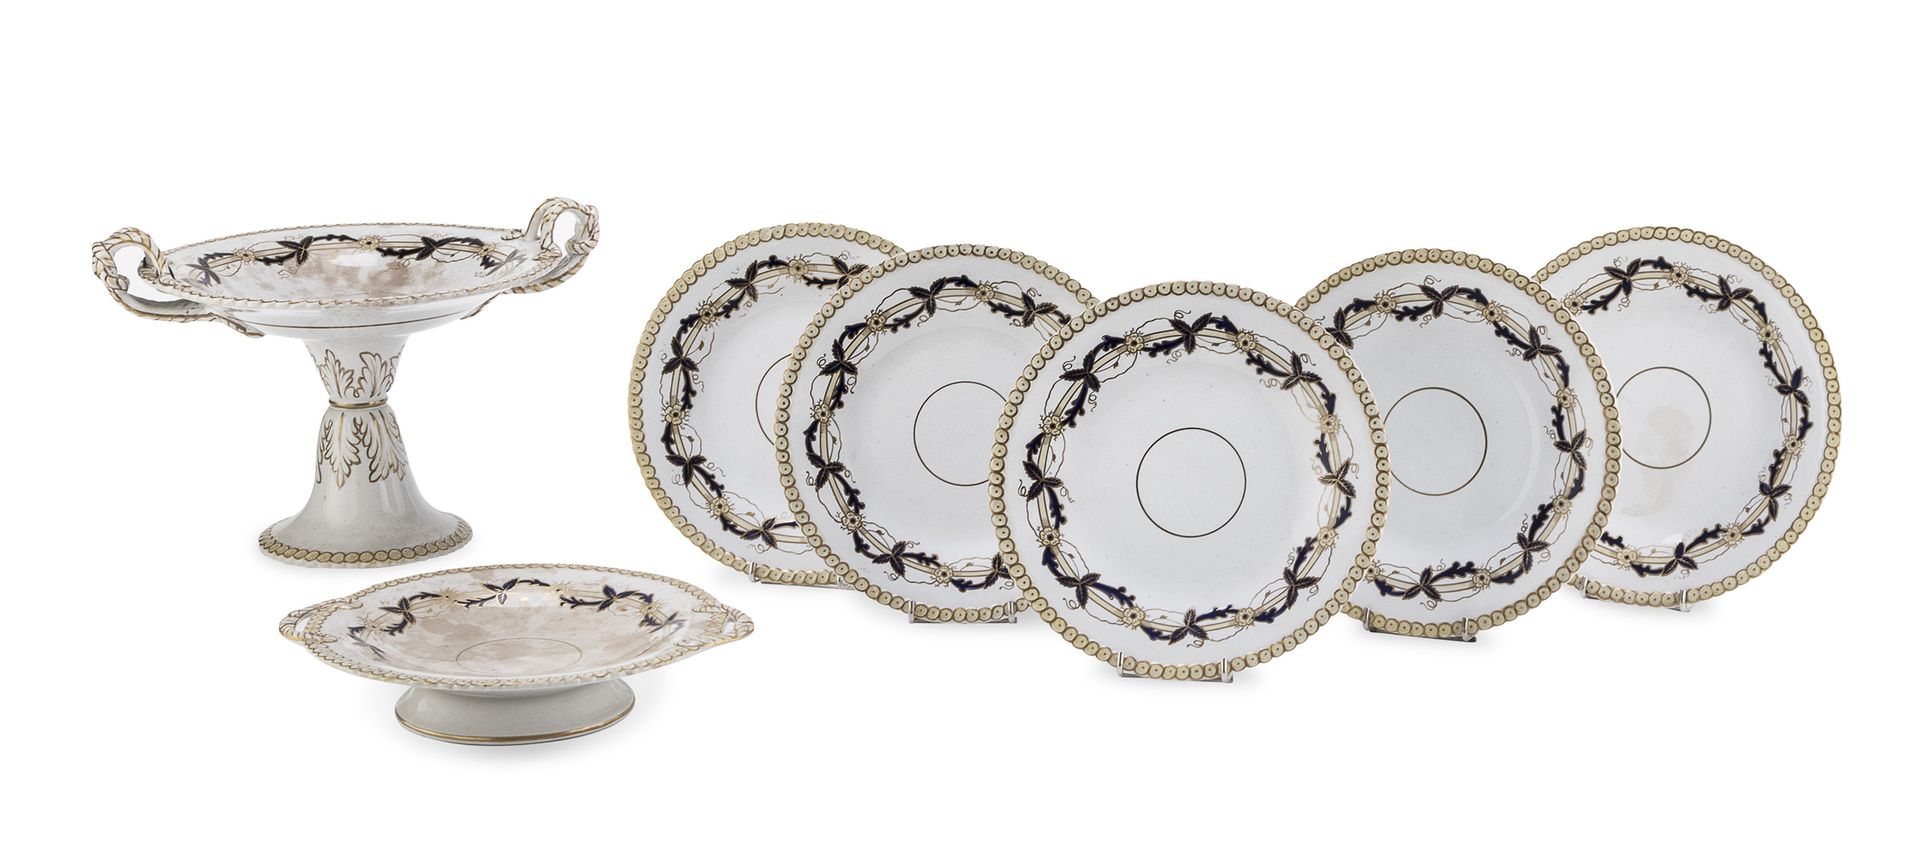 Null 陶器餐具的一部分，英国 19世纪末

有丝带和花环装饰，有鱼鳞状边框。由果盘、立柱和九个盘子组成。

粘贴中的雕刻标记。

测量水果碗，cm. 24 &hellip;